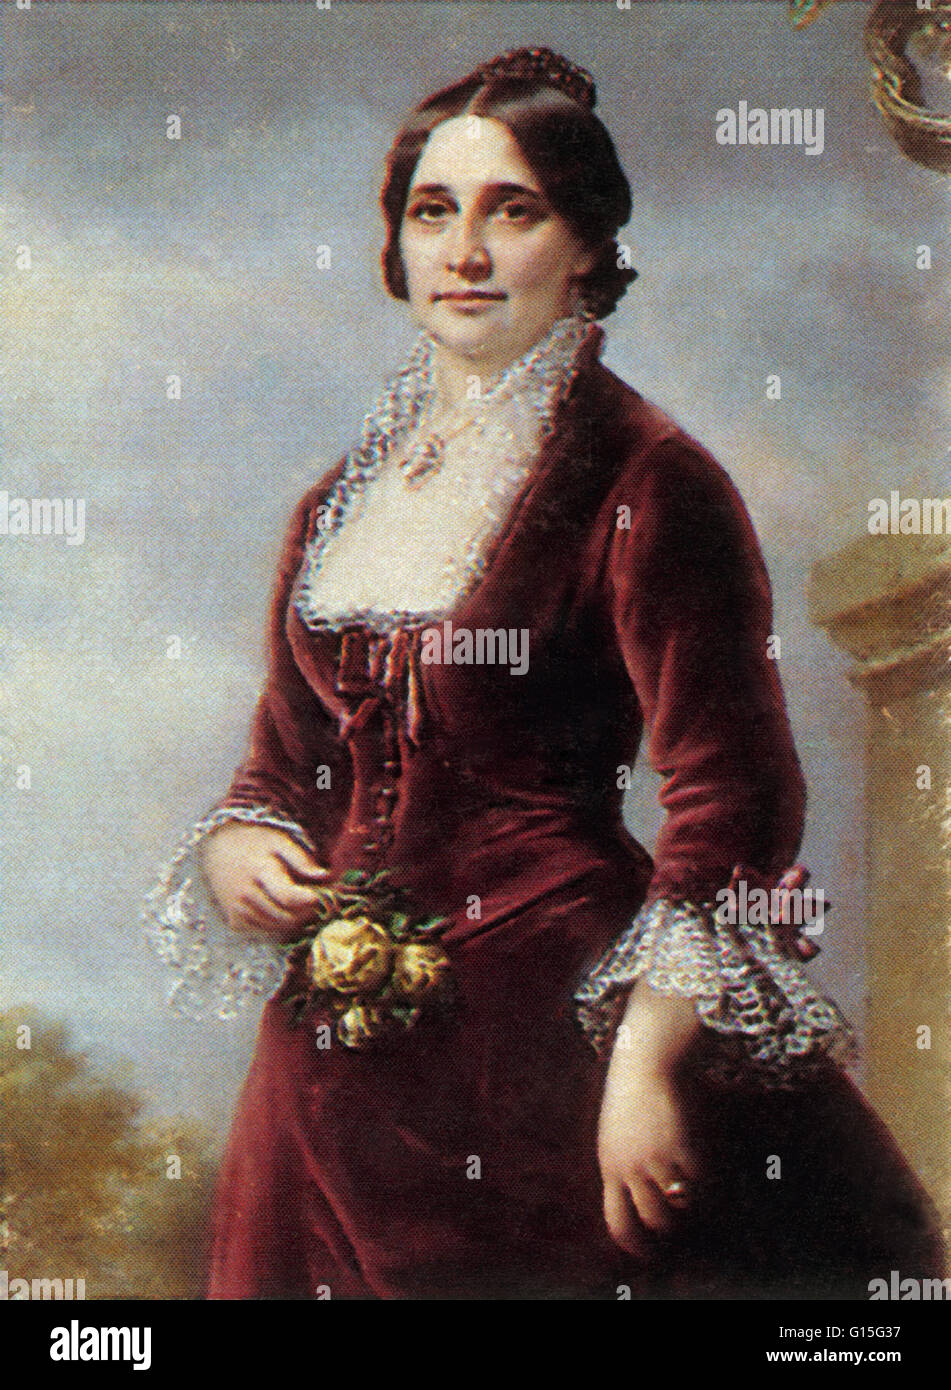 Lucy Ware Webb Hayes (28. August 1831 - 25. Juni 1889) war eine First Lady der Vereinigten Staaten und die Ehefrau von Präsident Rutherford B. Hayes. Historiker haben ihre "Lemonade Lucy" durch ihre nachhaltige Unterstützung der Abstinenzbewegung getauft, aber er war es Stockfoto